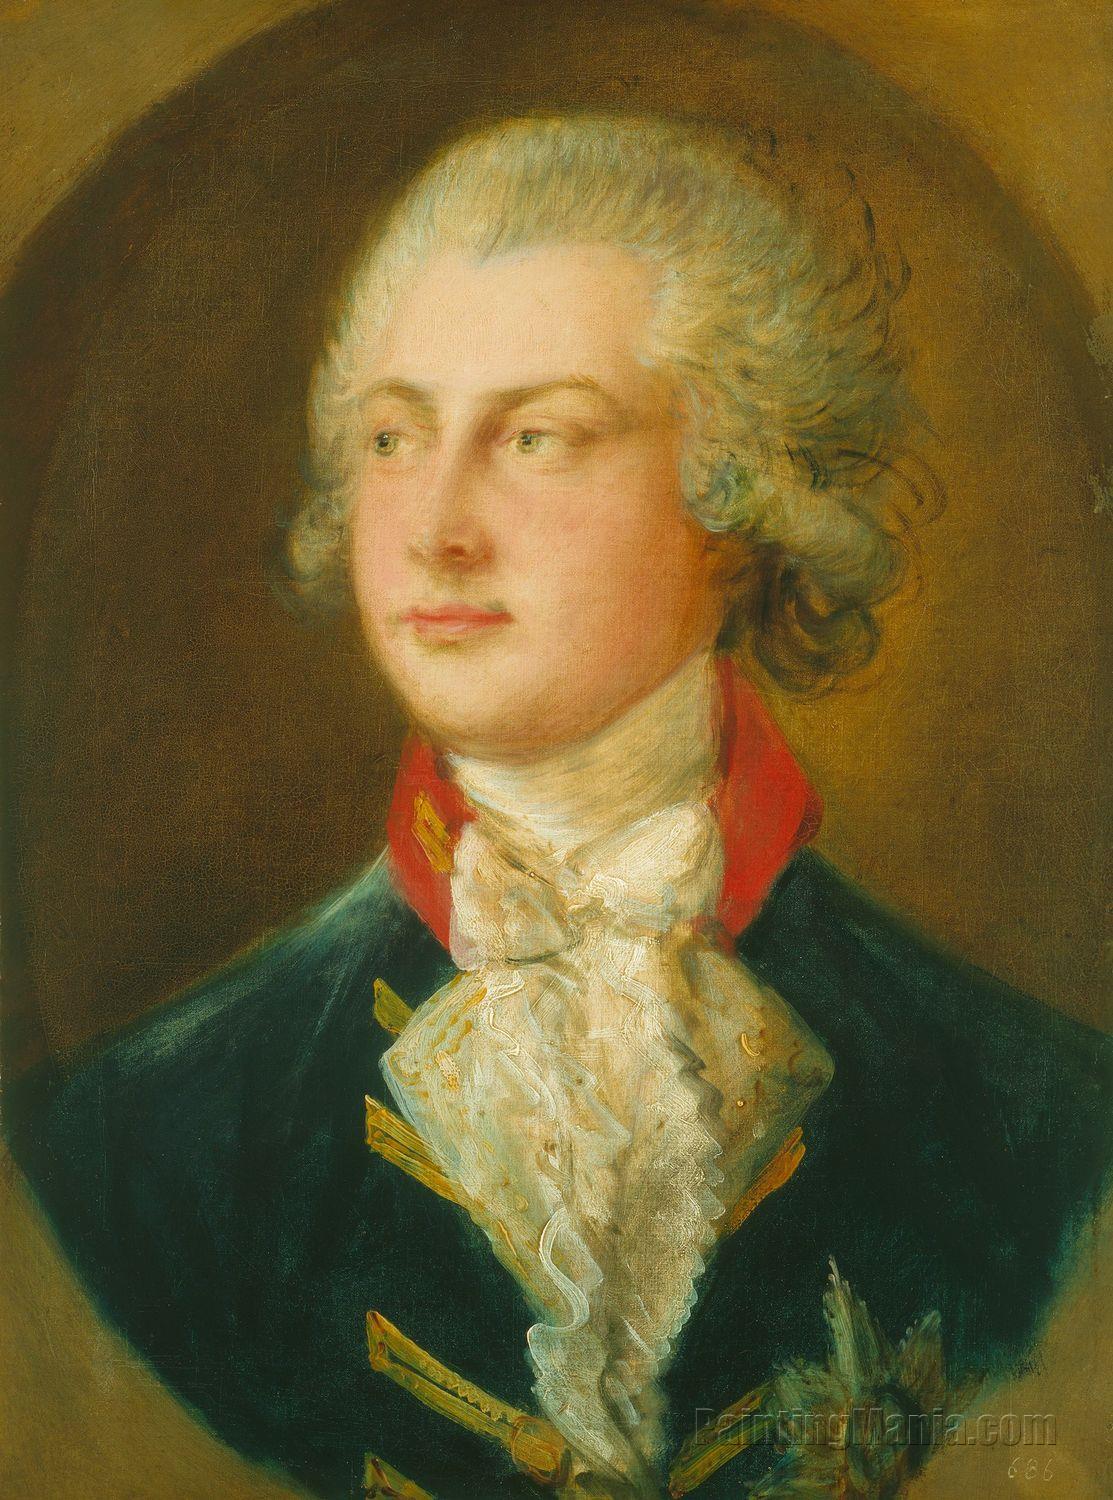 George IV, Prince of Wales